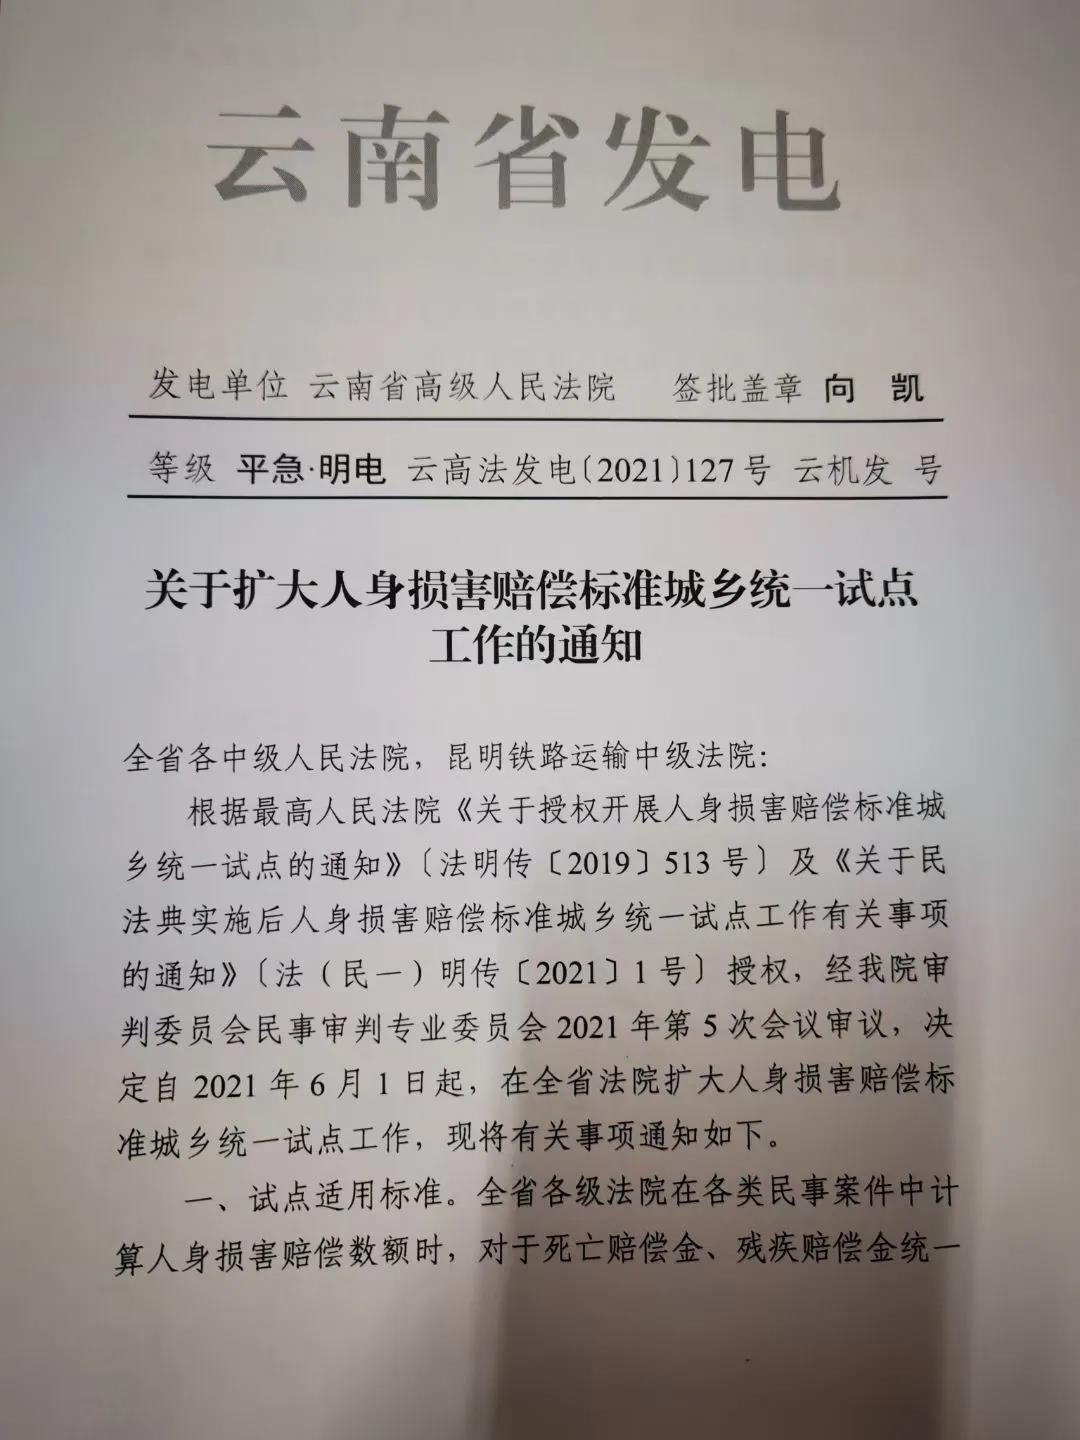 楚雄云南省高级人民法院关于扩大人身损害赔偿标准城乡统一试点工作的通知